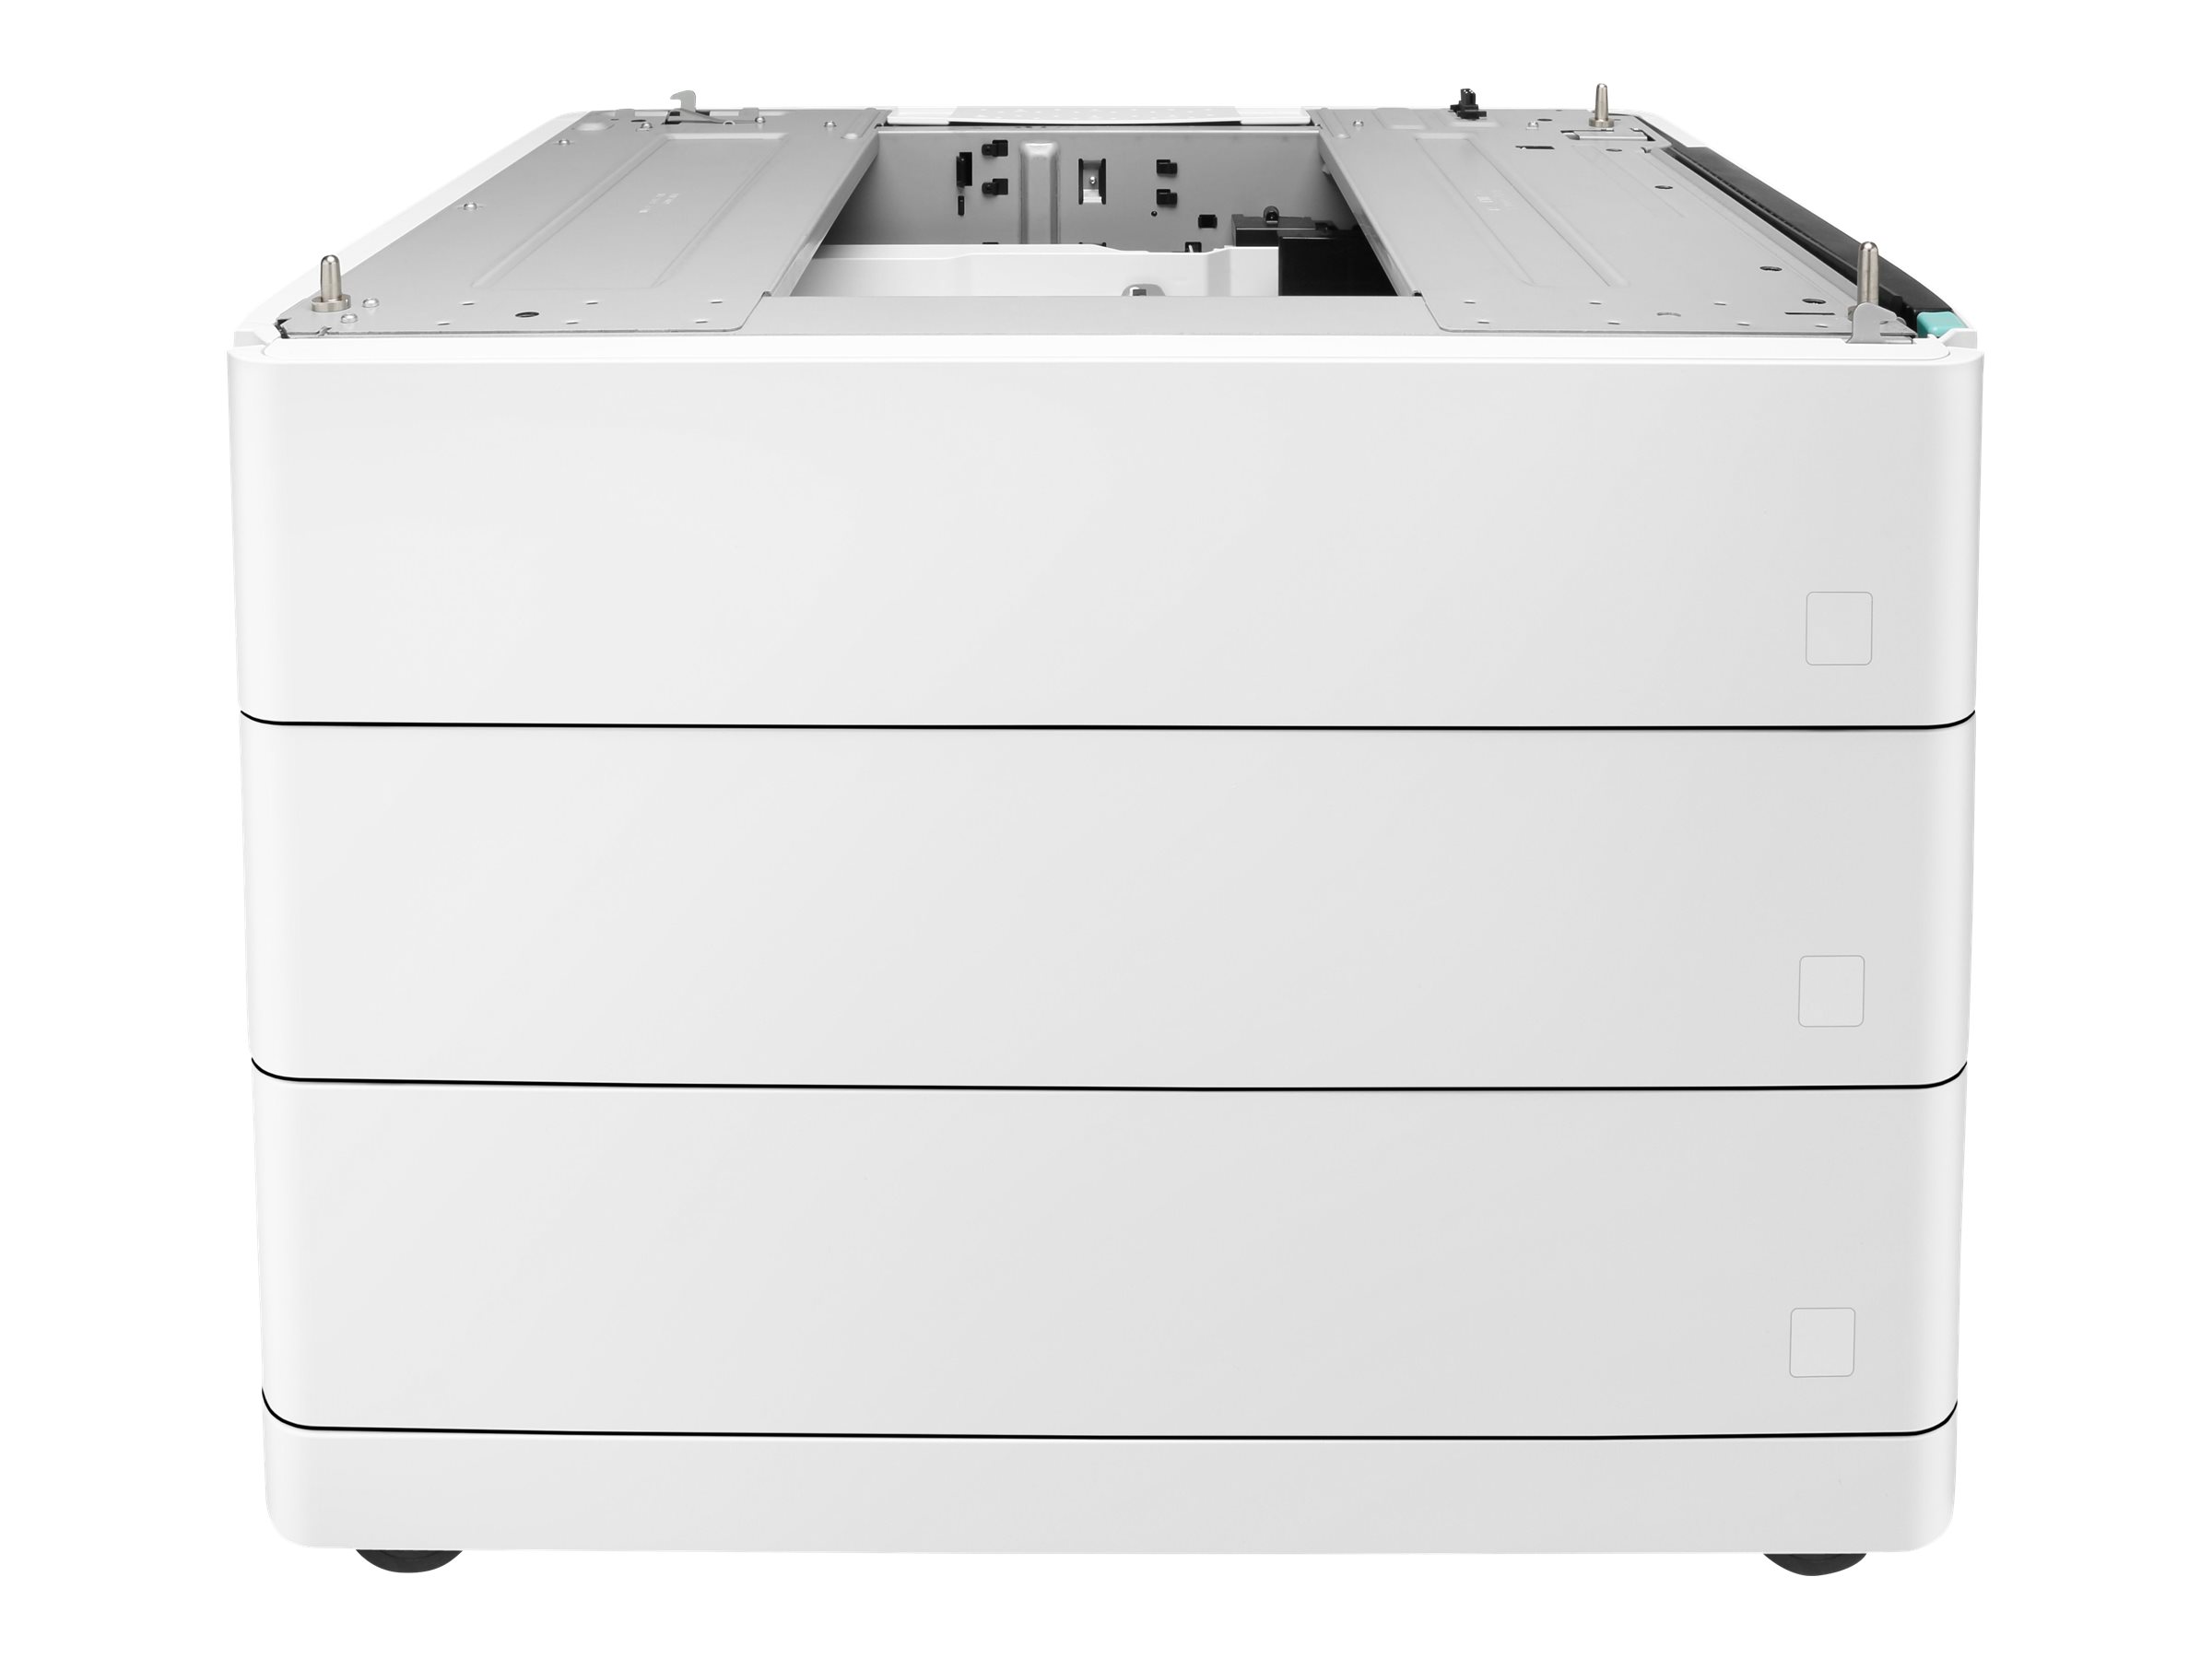 HP Papierzufhrung und Unterstand - Medienschacht - 1650 Bltter in 3 Schubladen (Trays) - fr PageWide Color 755, MFP 77X; Page